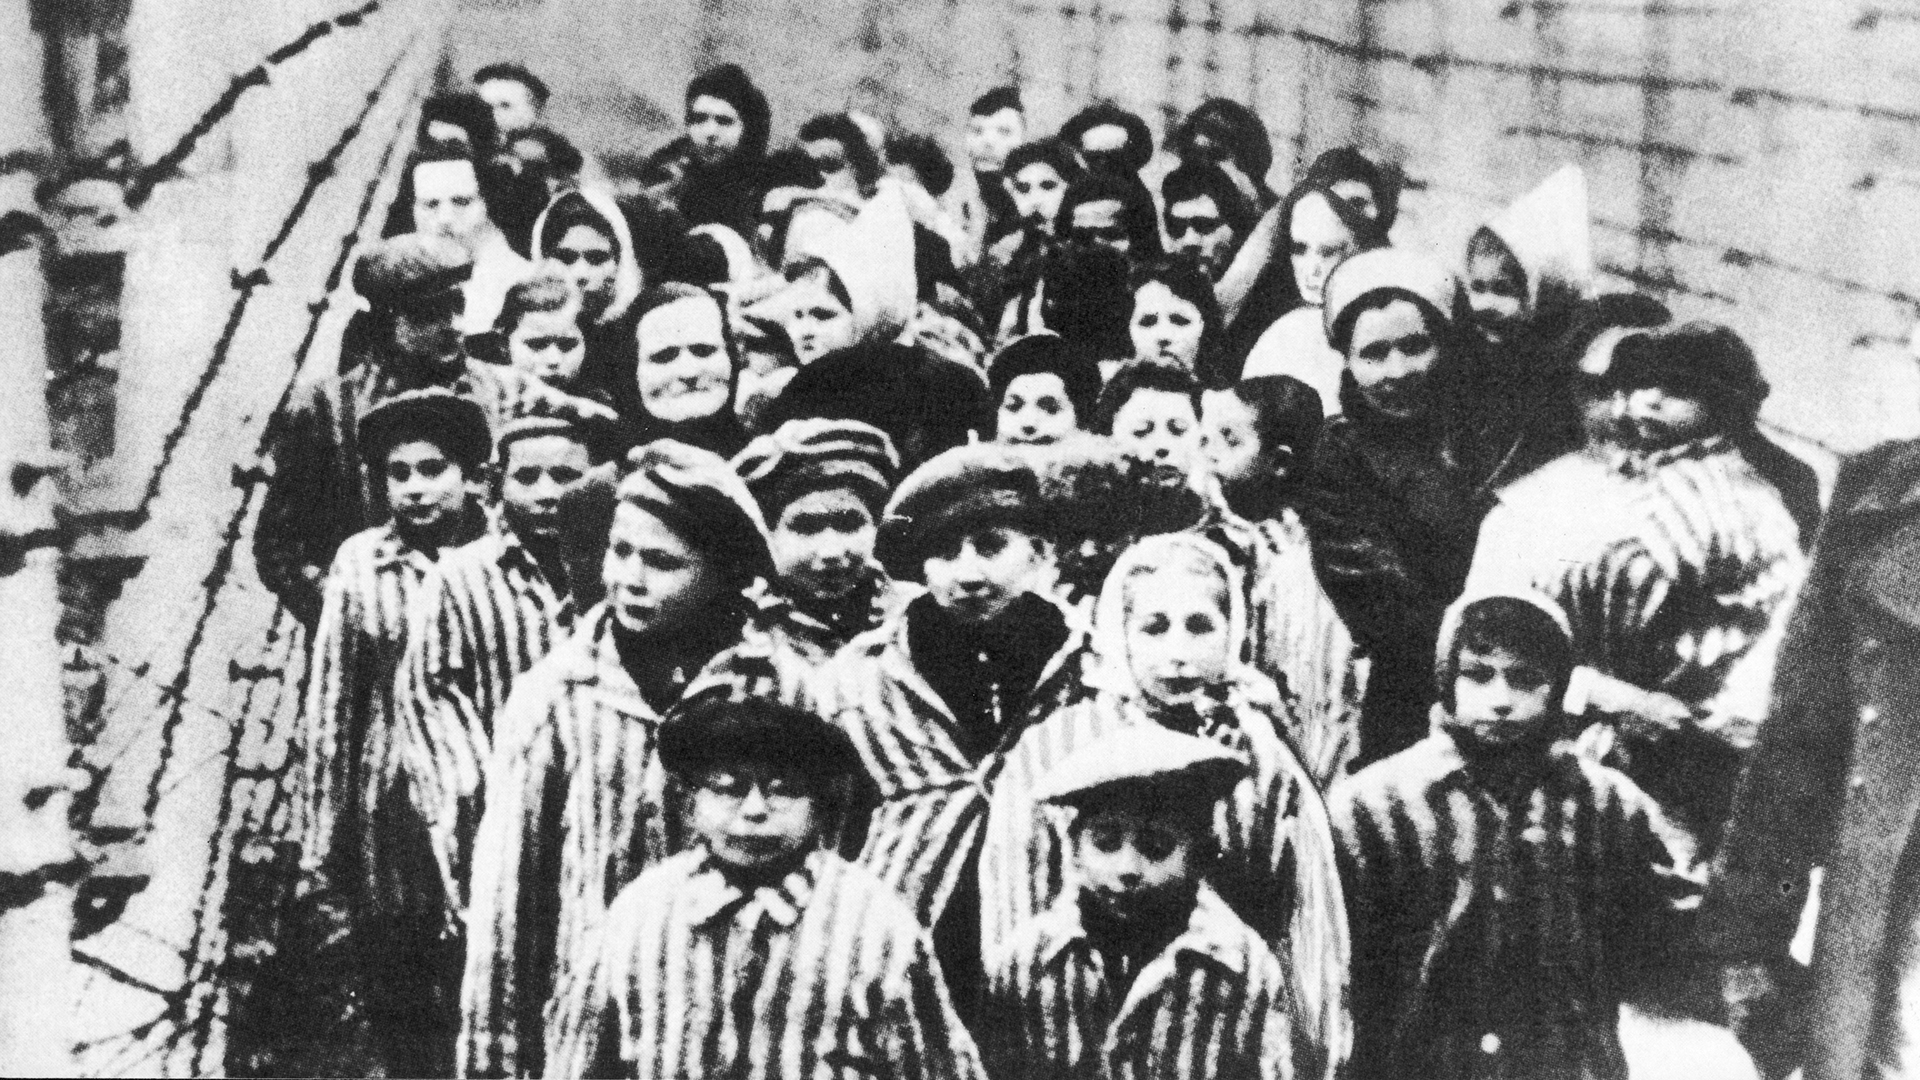 Kinder bei der Befreiung des Konzentrationslagers Auschwitz | picture-alliance / Mary Evans Pi